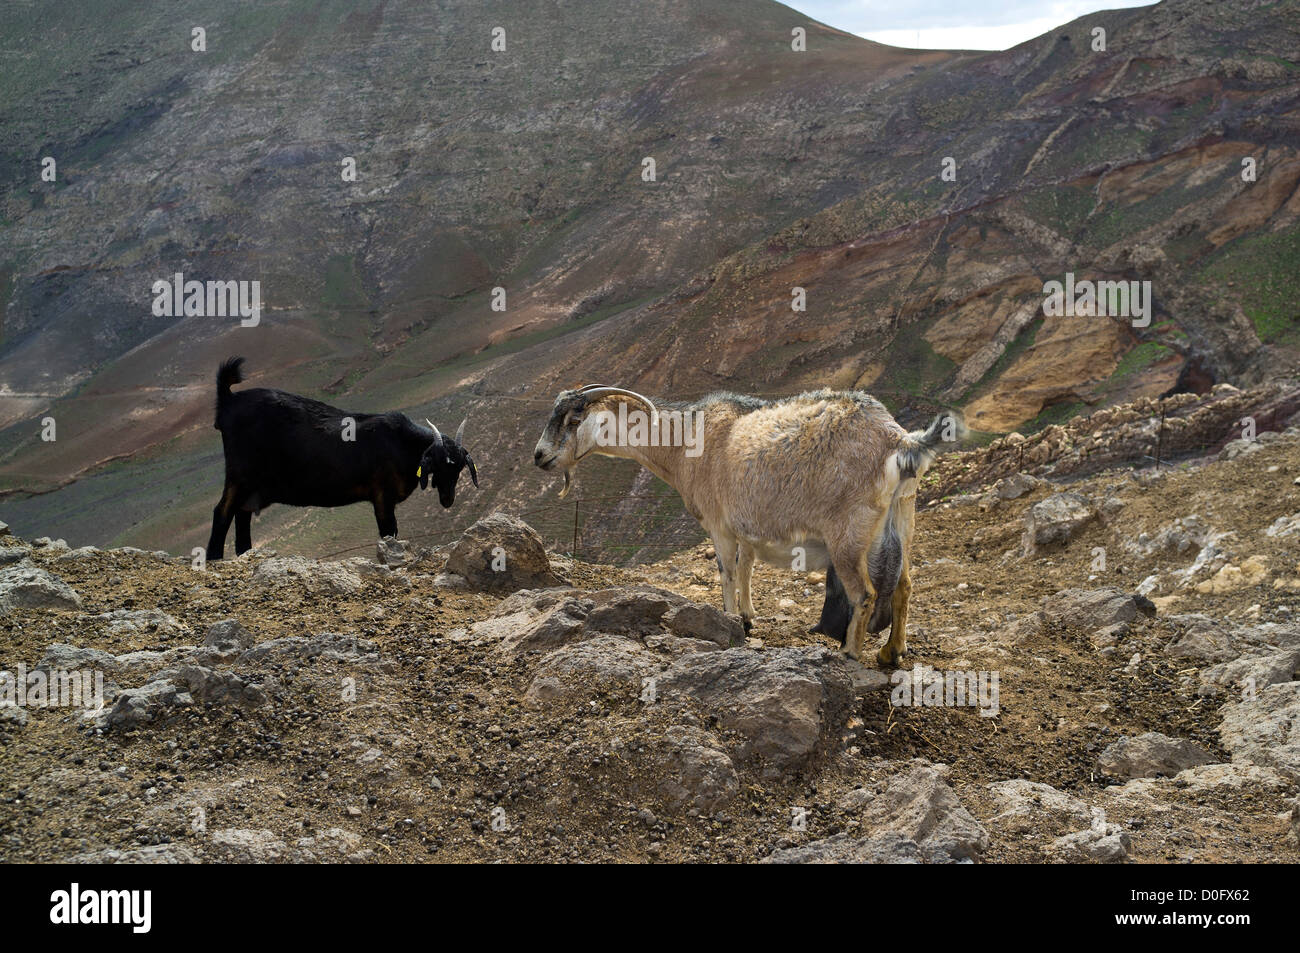 dh FEMES LANZAROTE cabaña de cabras animales domésticos montaña ladera cabras nadie Foto de stock